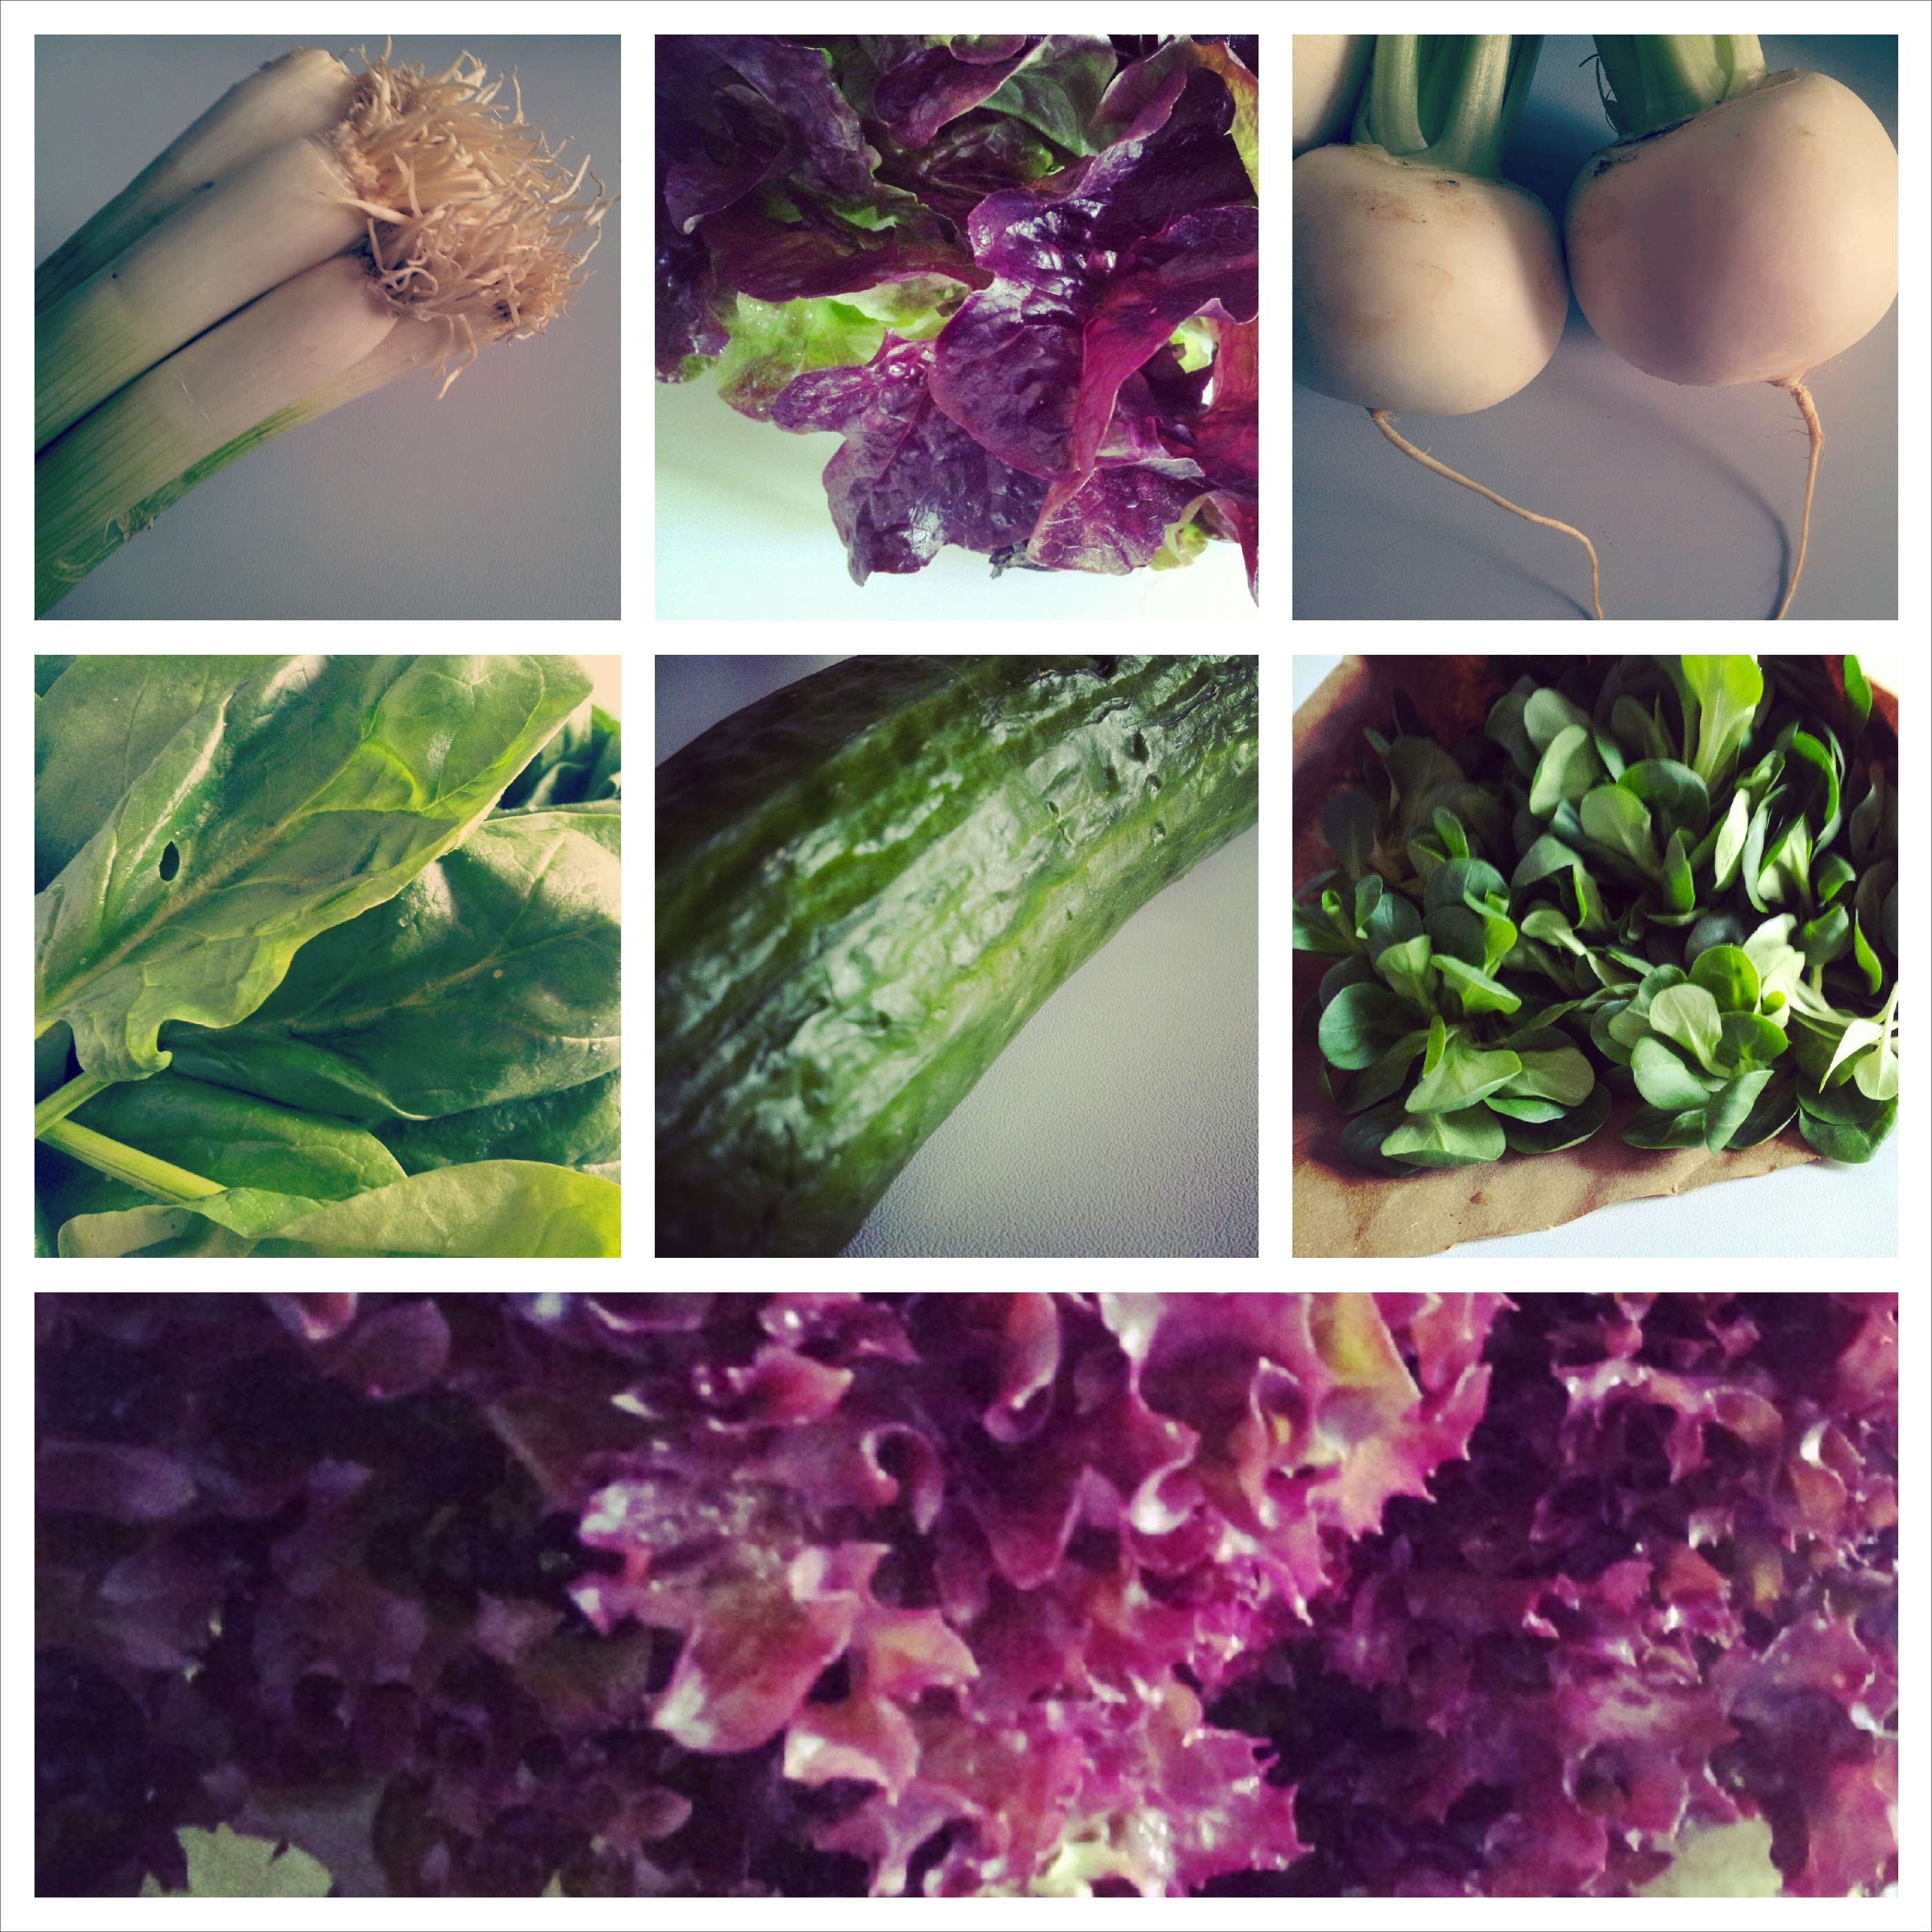 Salat und Gemüse